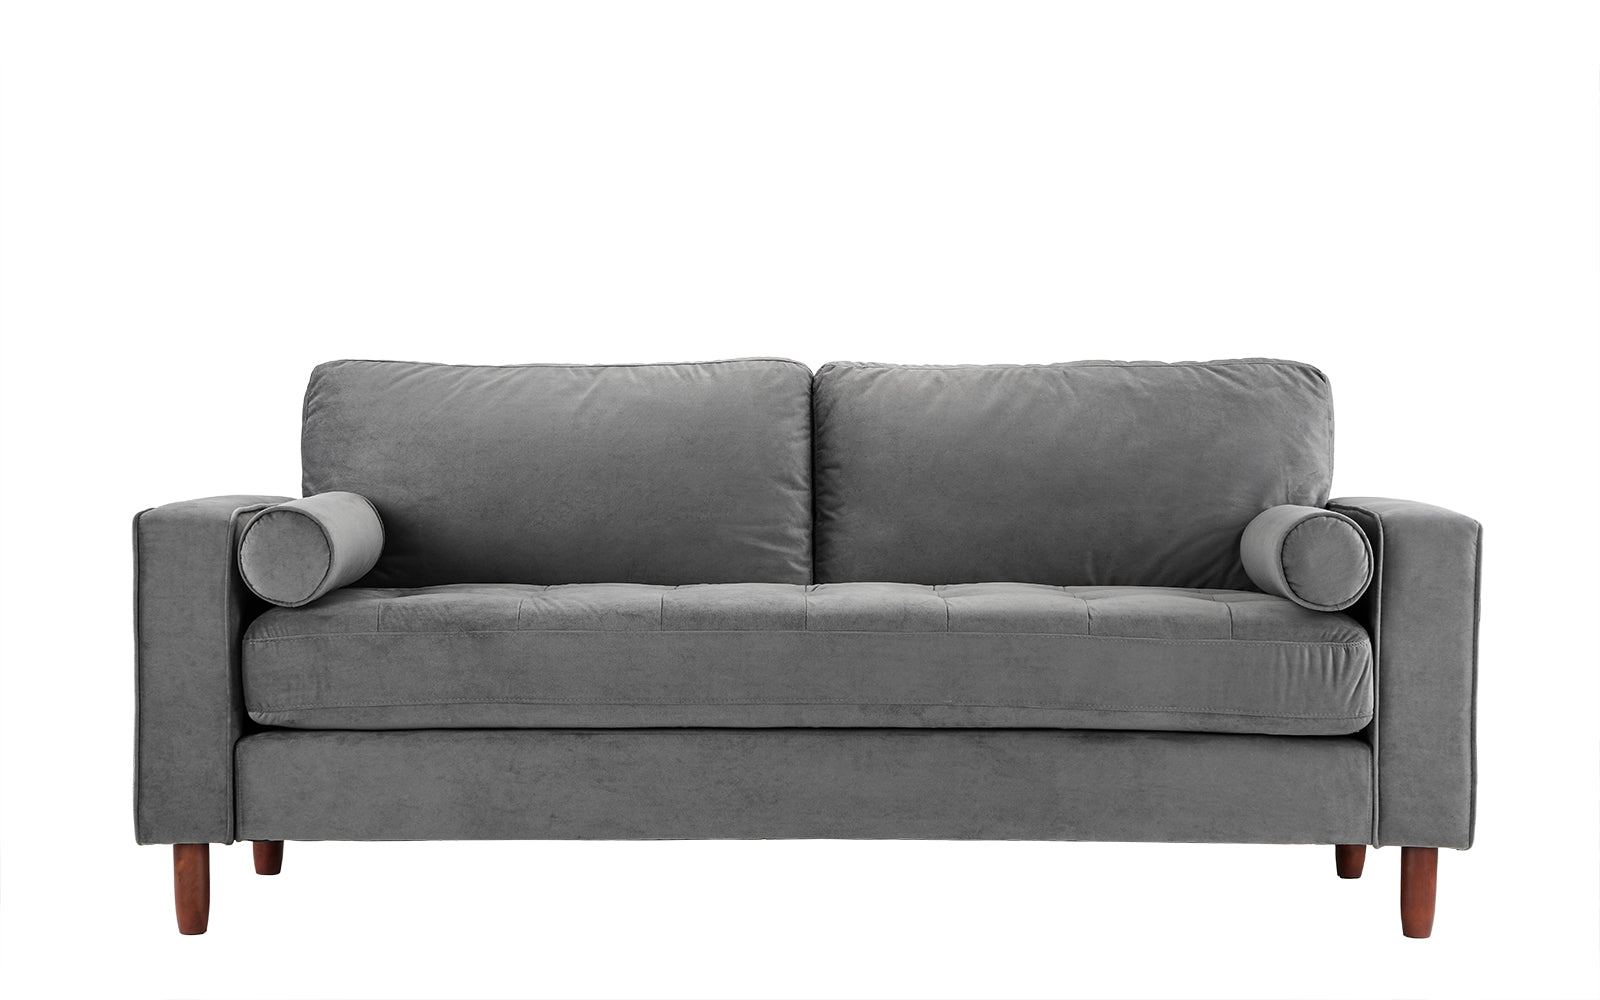 Ember Tufted Velvet Sofa With Bolster Pillows